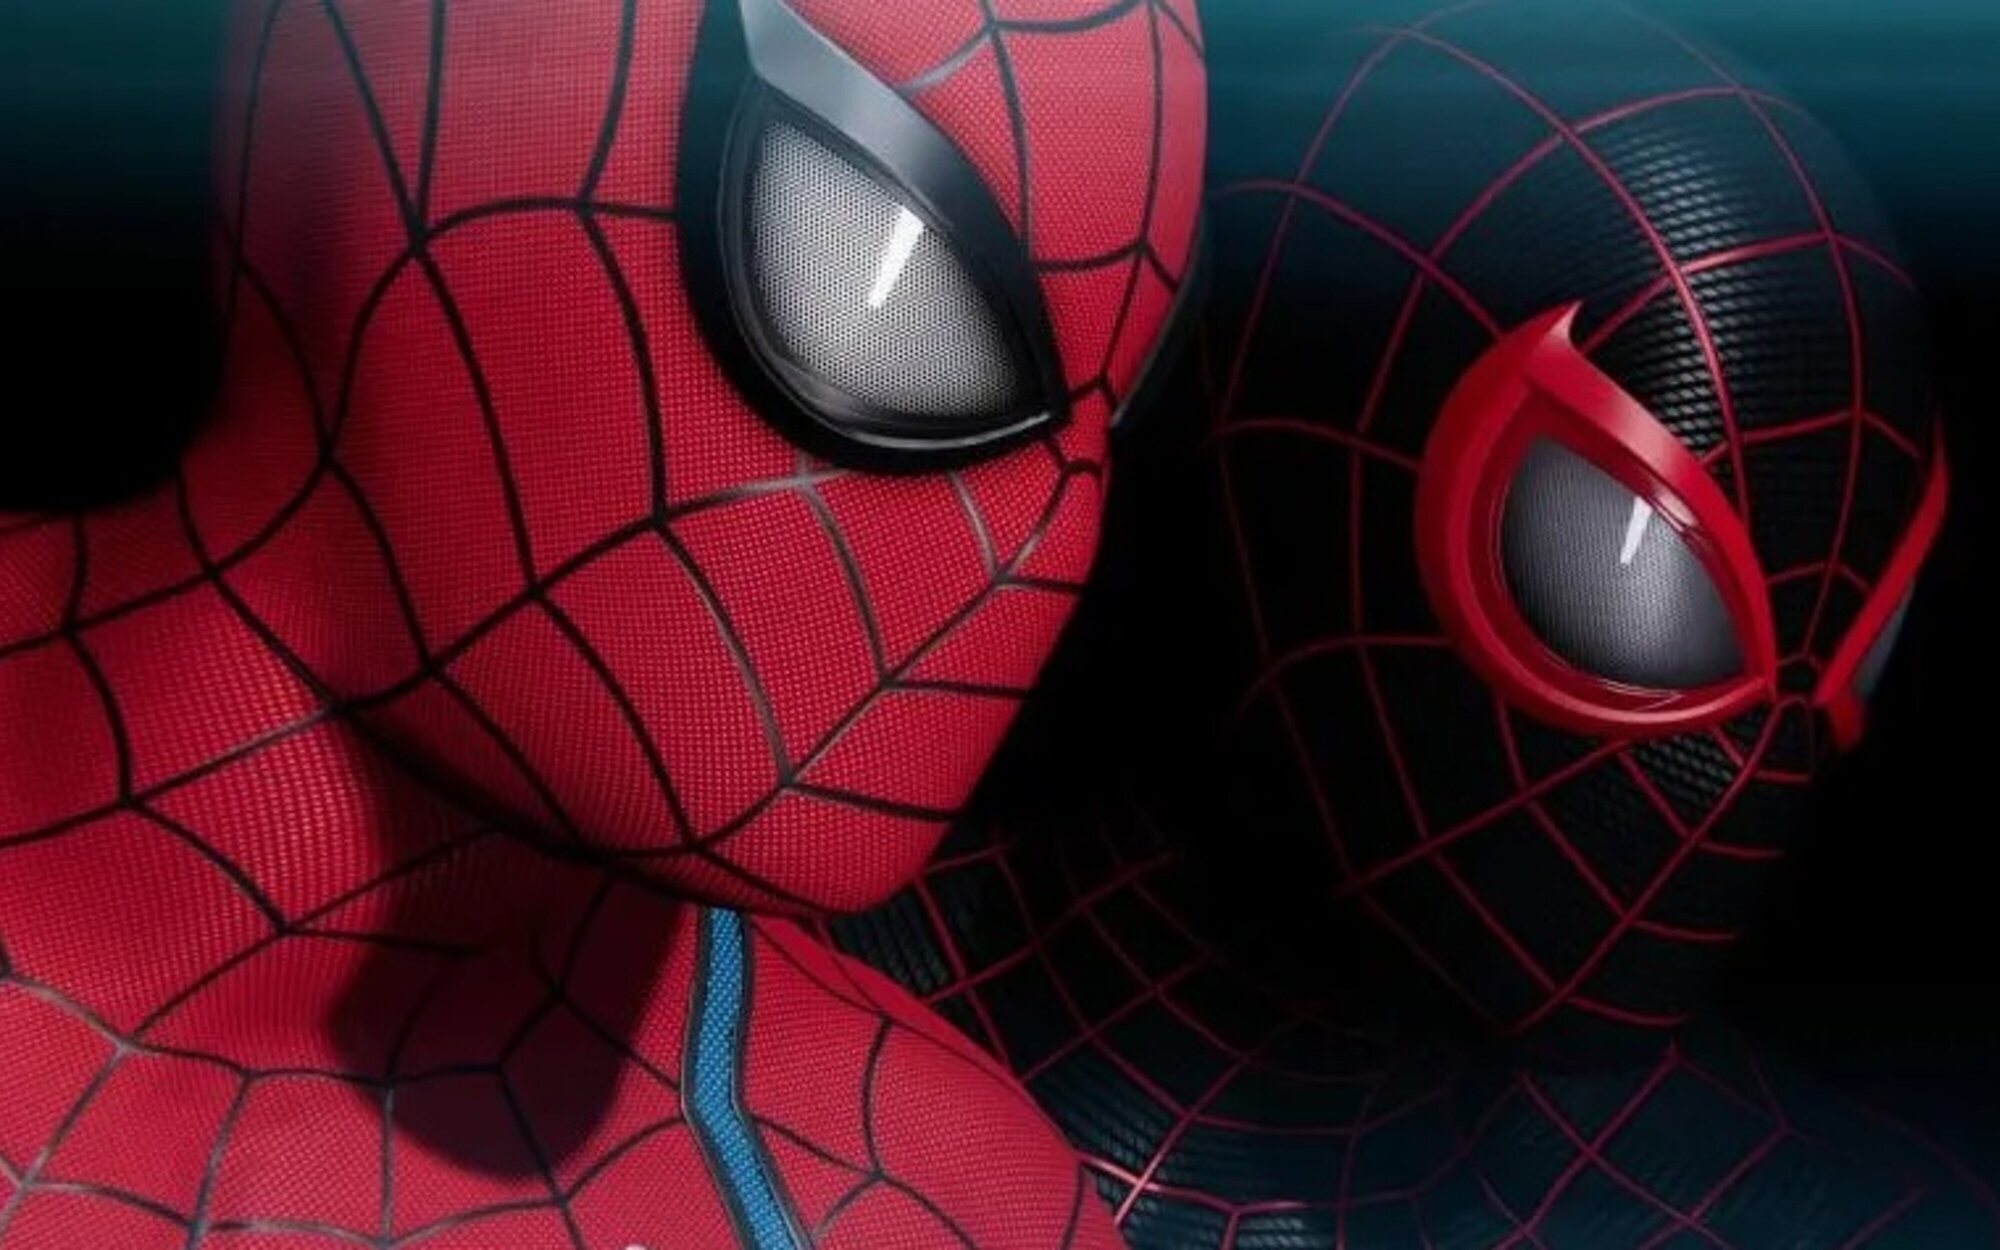 'Marvel's Spider-Man 2' será un juego enorme y sorprendente, afirma el actor de voz de Spidey